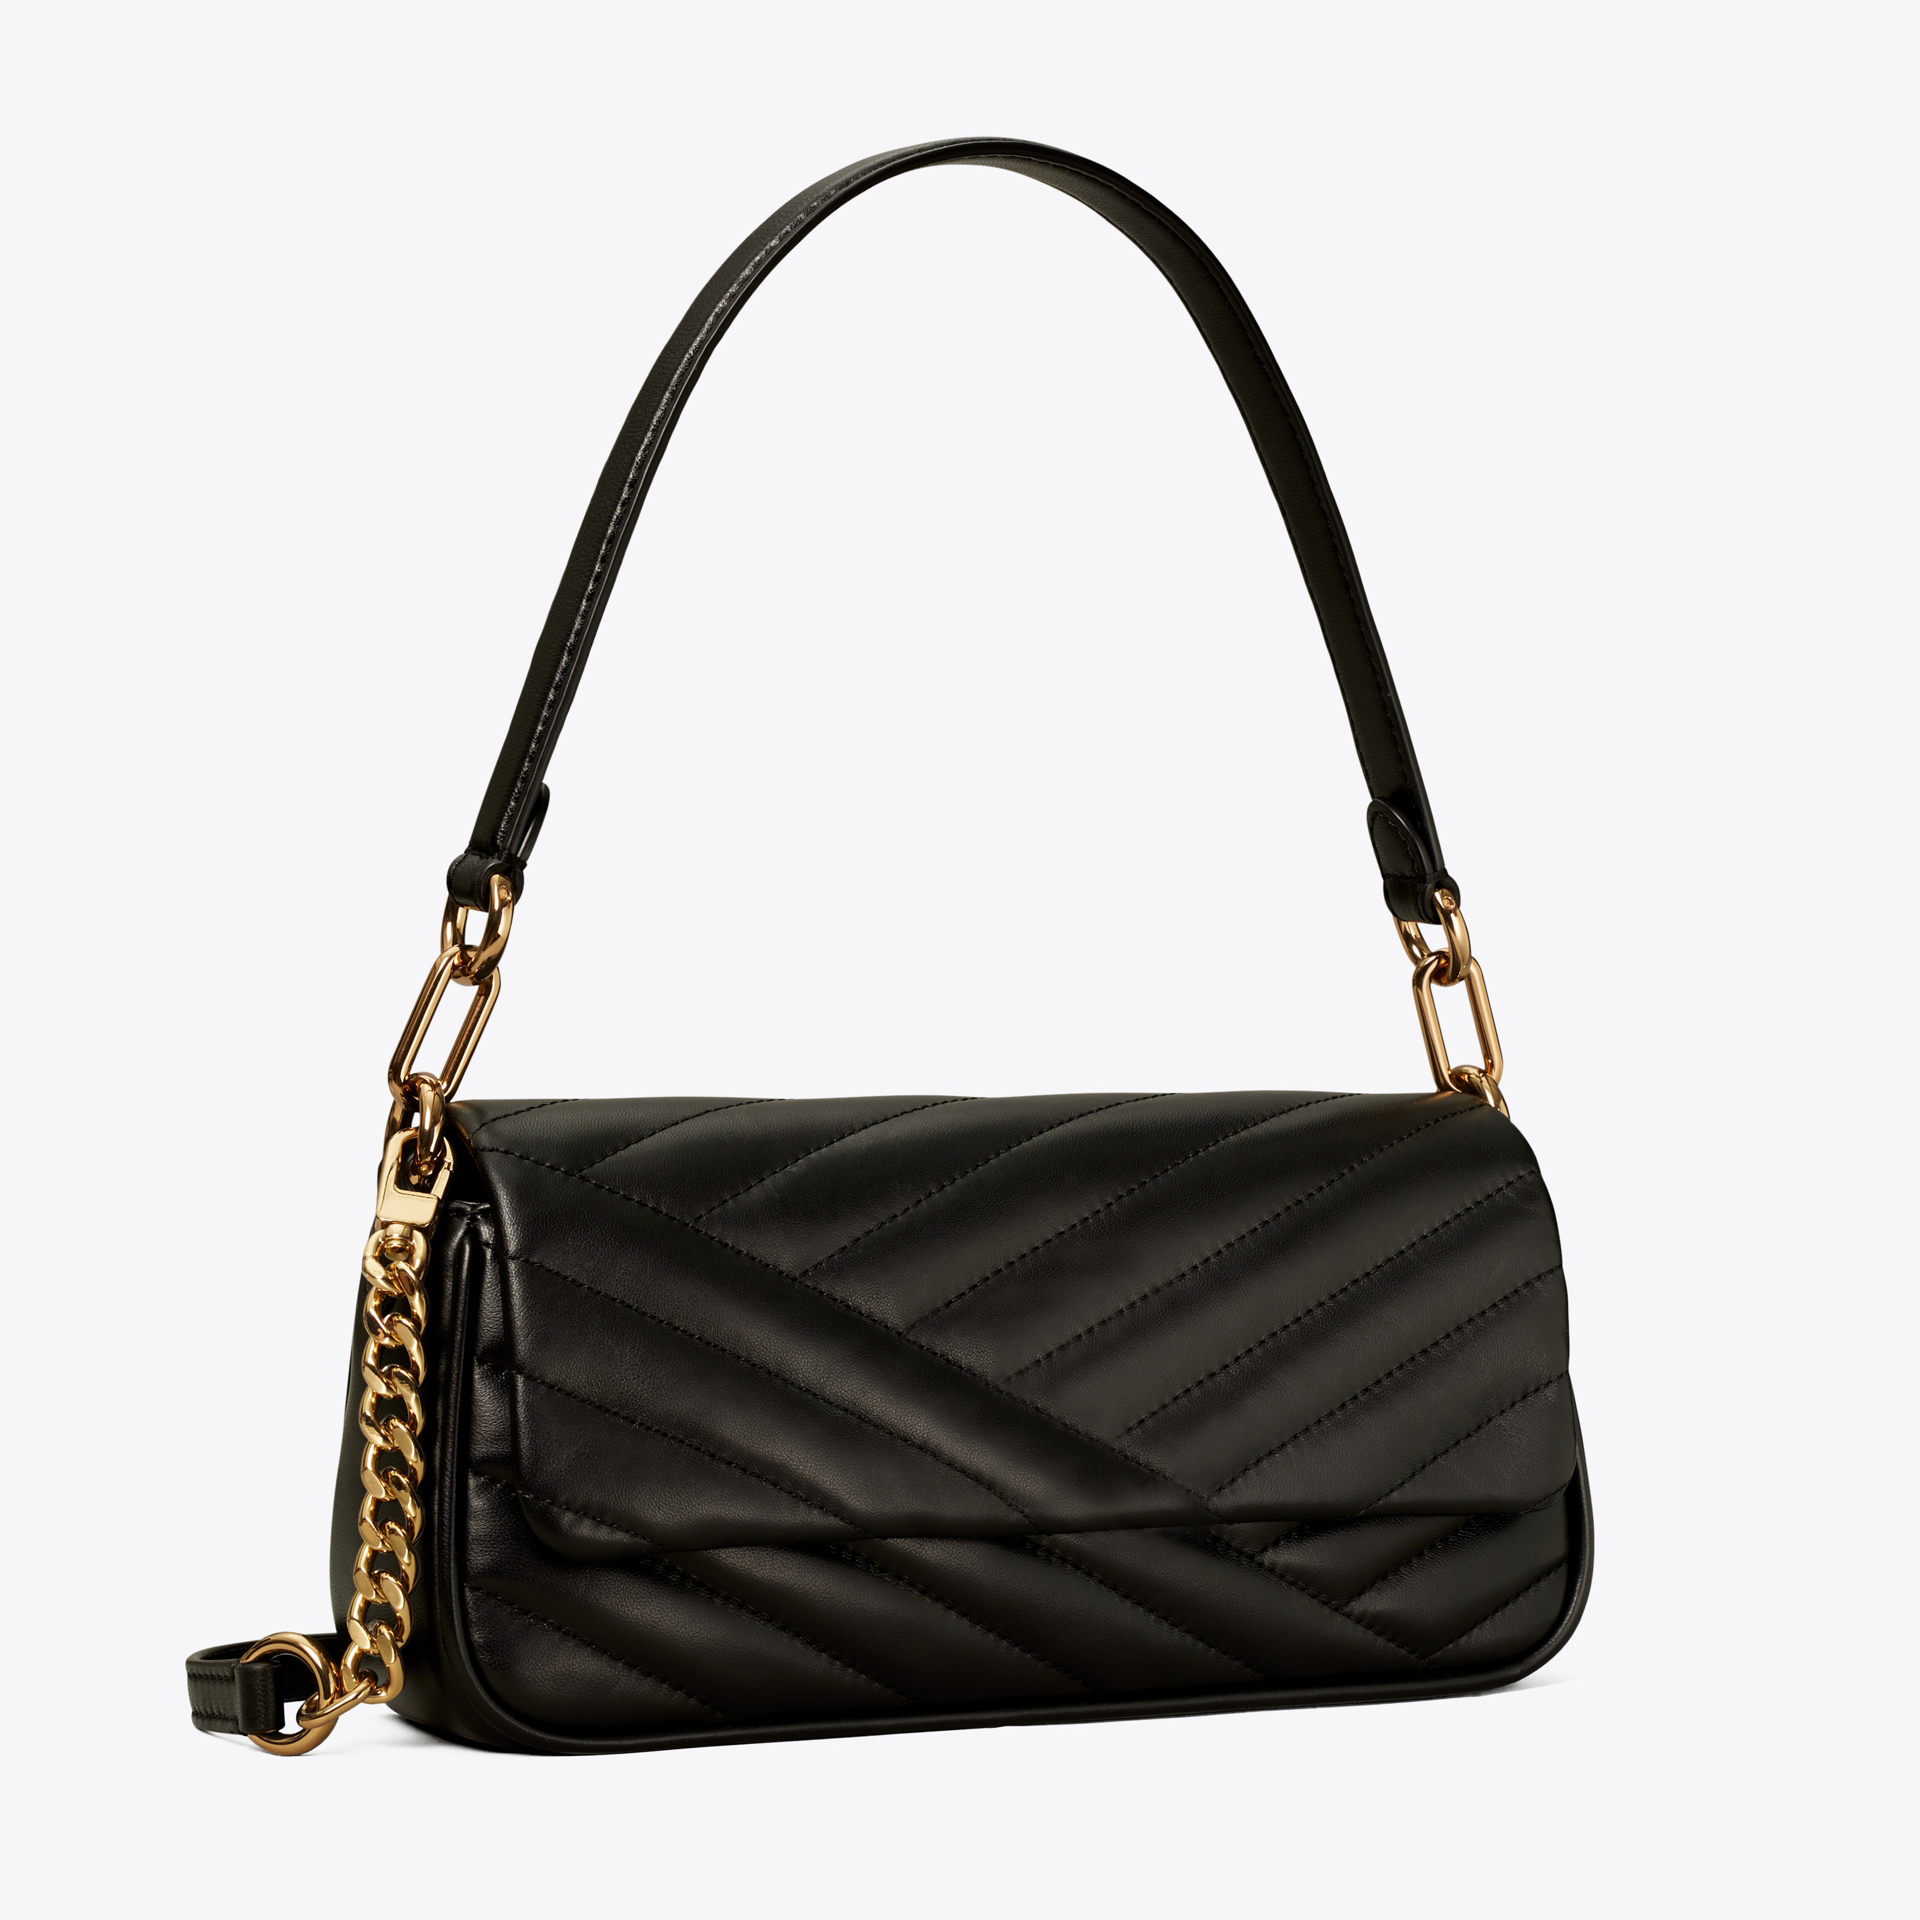 

Women's luxury fashion armpit Shoulder Bag Handbag version light detachable diagonal chain exquisite bag design suitable for all occasions wholesale 4 colors, Black